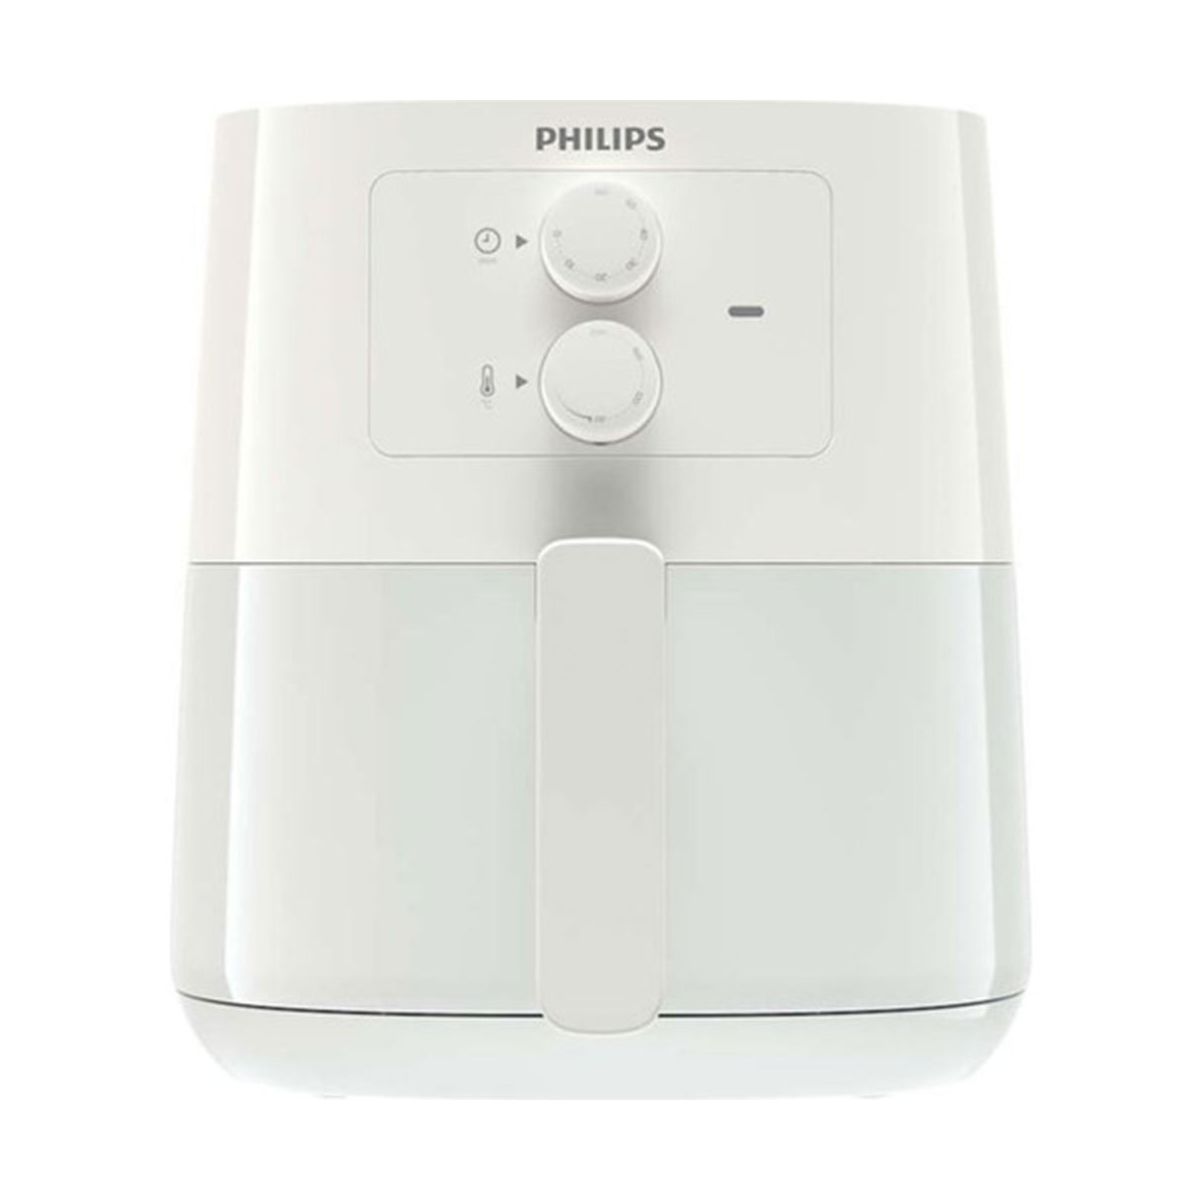 Philips Airfryer XXL HD9867/90 7.3 lt Yağsız Fritöz Fiyatları, Özellikleri  ve Yorumları